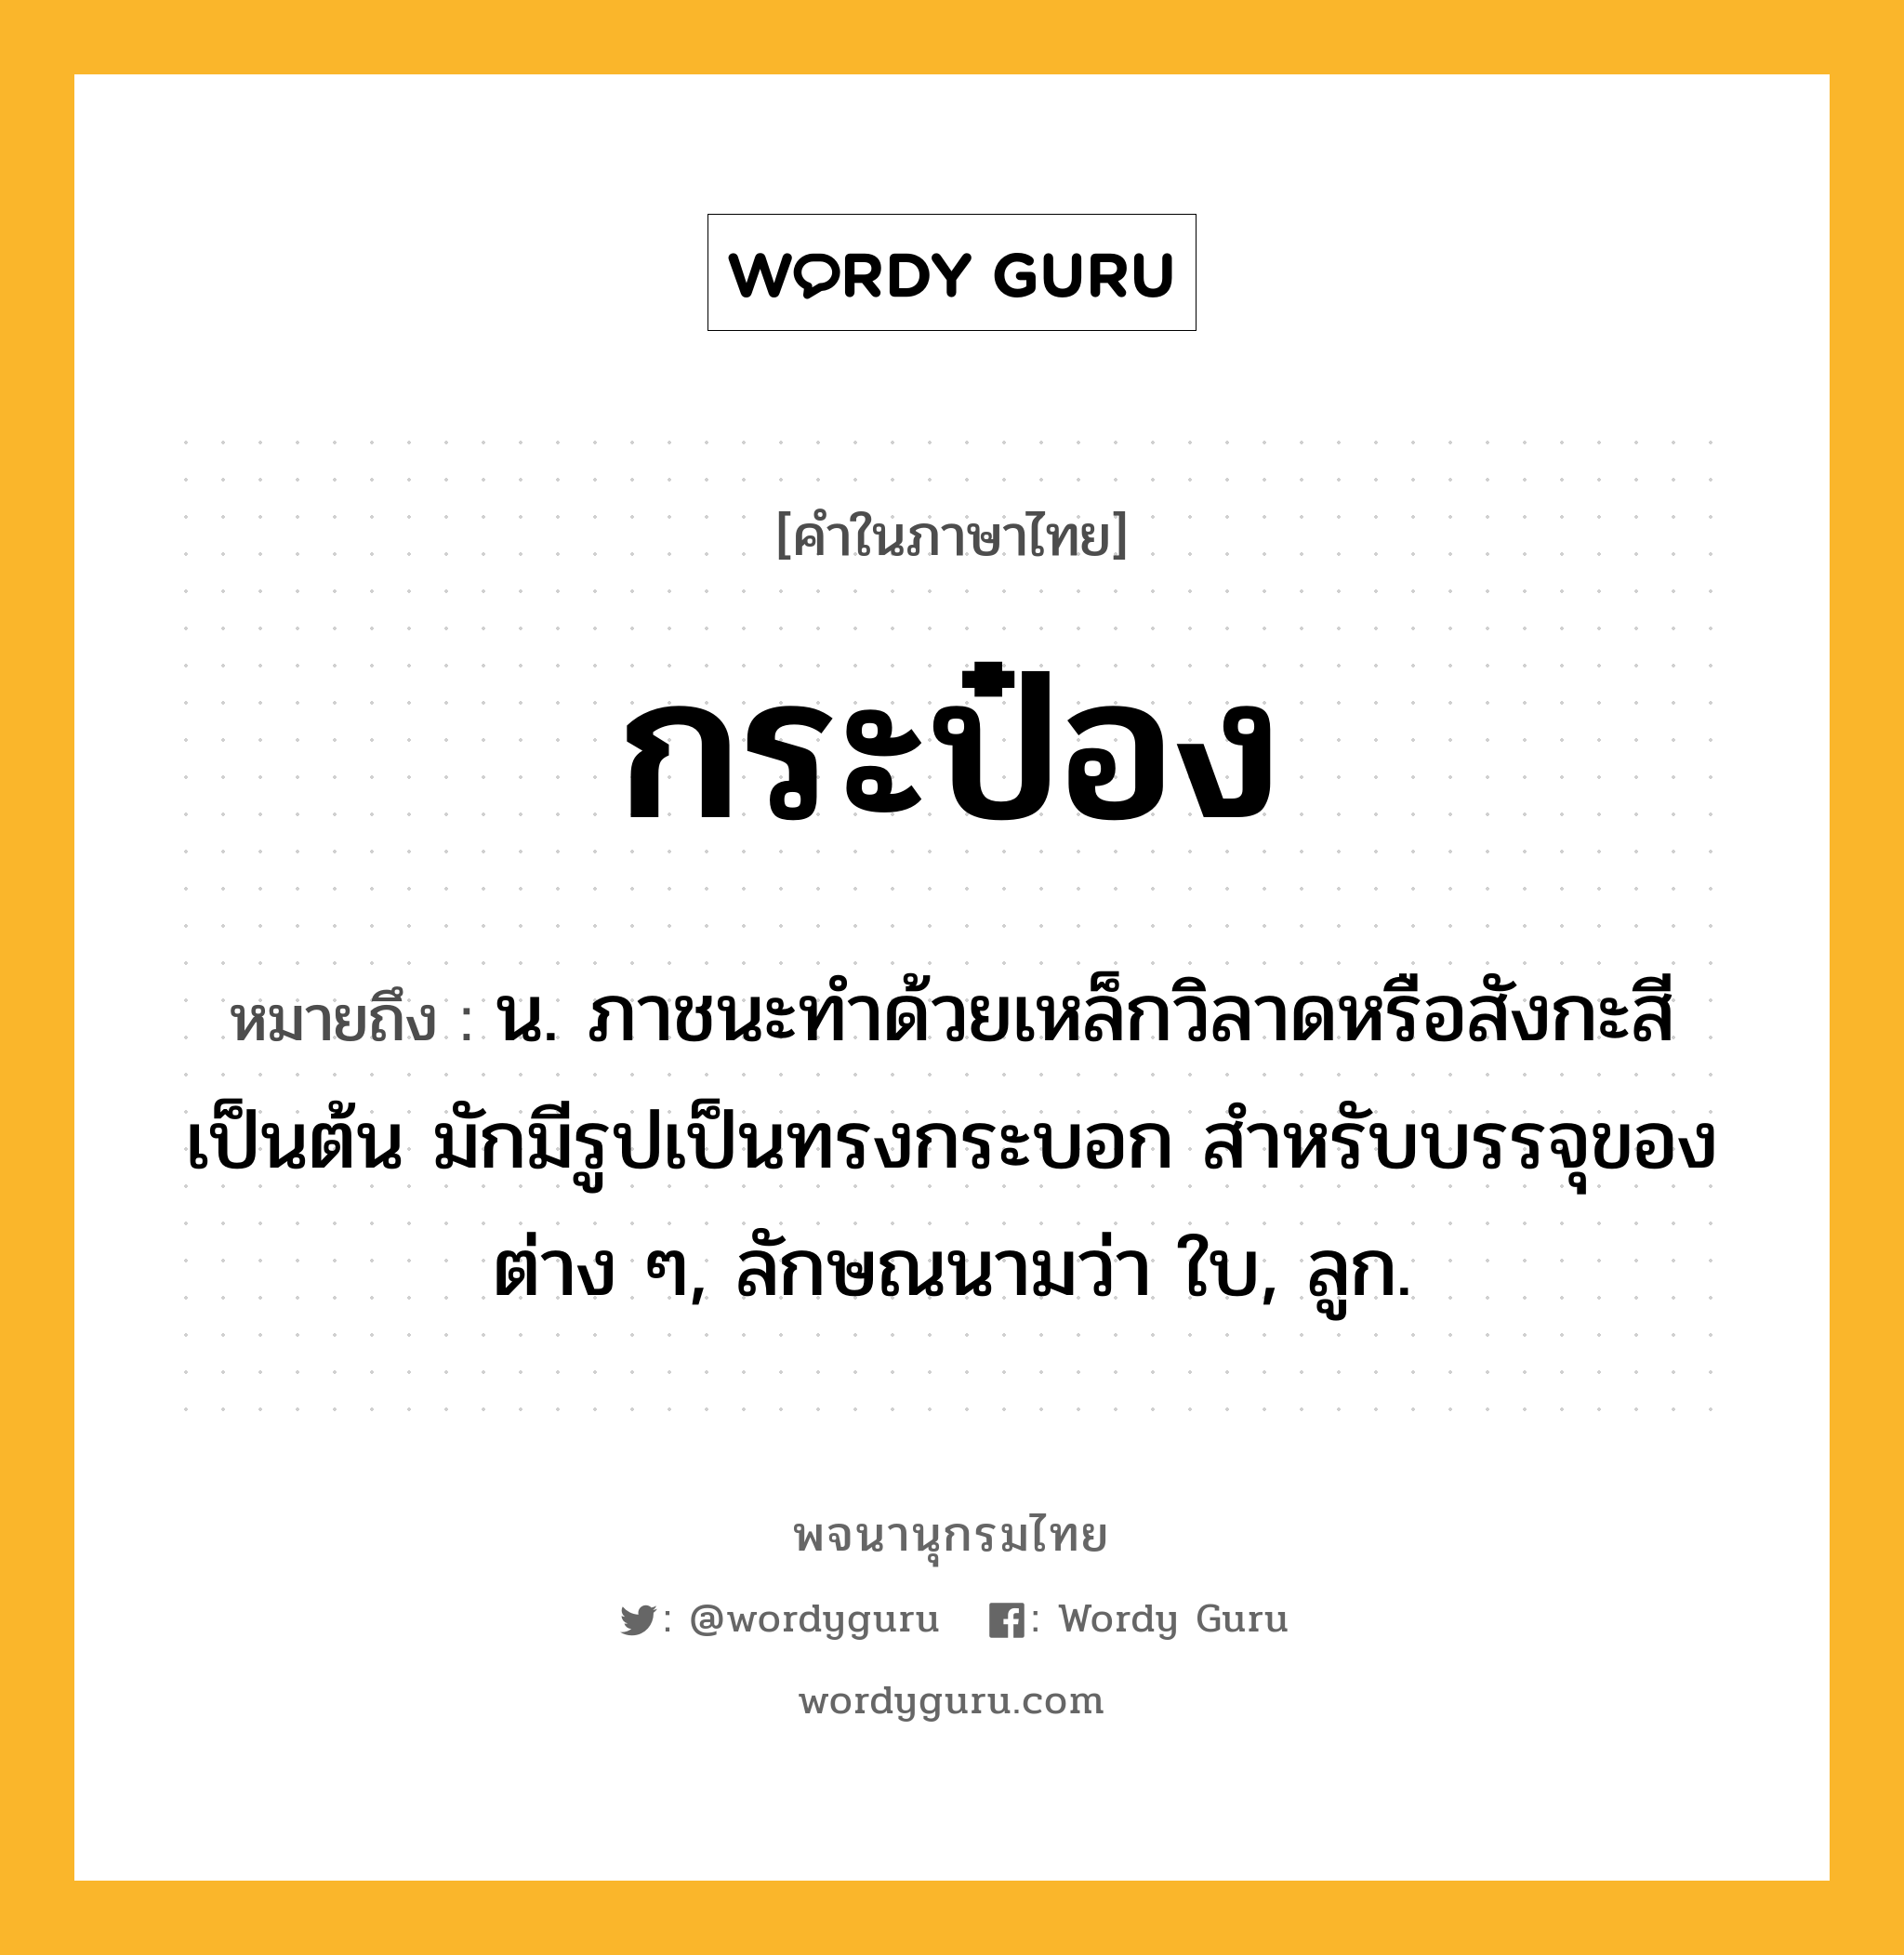 กระป๋อง หมายถึงอะไร?, คำในภาษาไทย กระป๋อง หมายถึง น. ภาชนะทําด้วยเหล็กวิลาดหรือสังกะสีเป็นต้น มักมีรูปเป็นทรงกระบอก สําหรับบรรจุของต่าง ๆ, ลักษณนามว่า ใบ, ลูก.